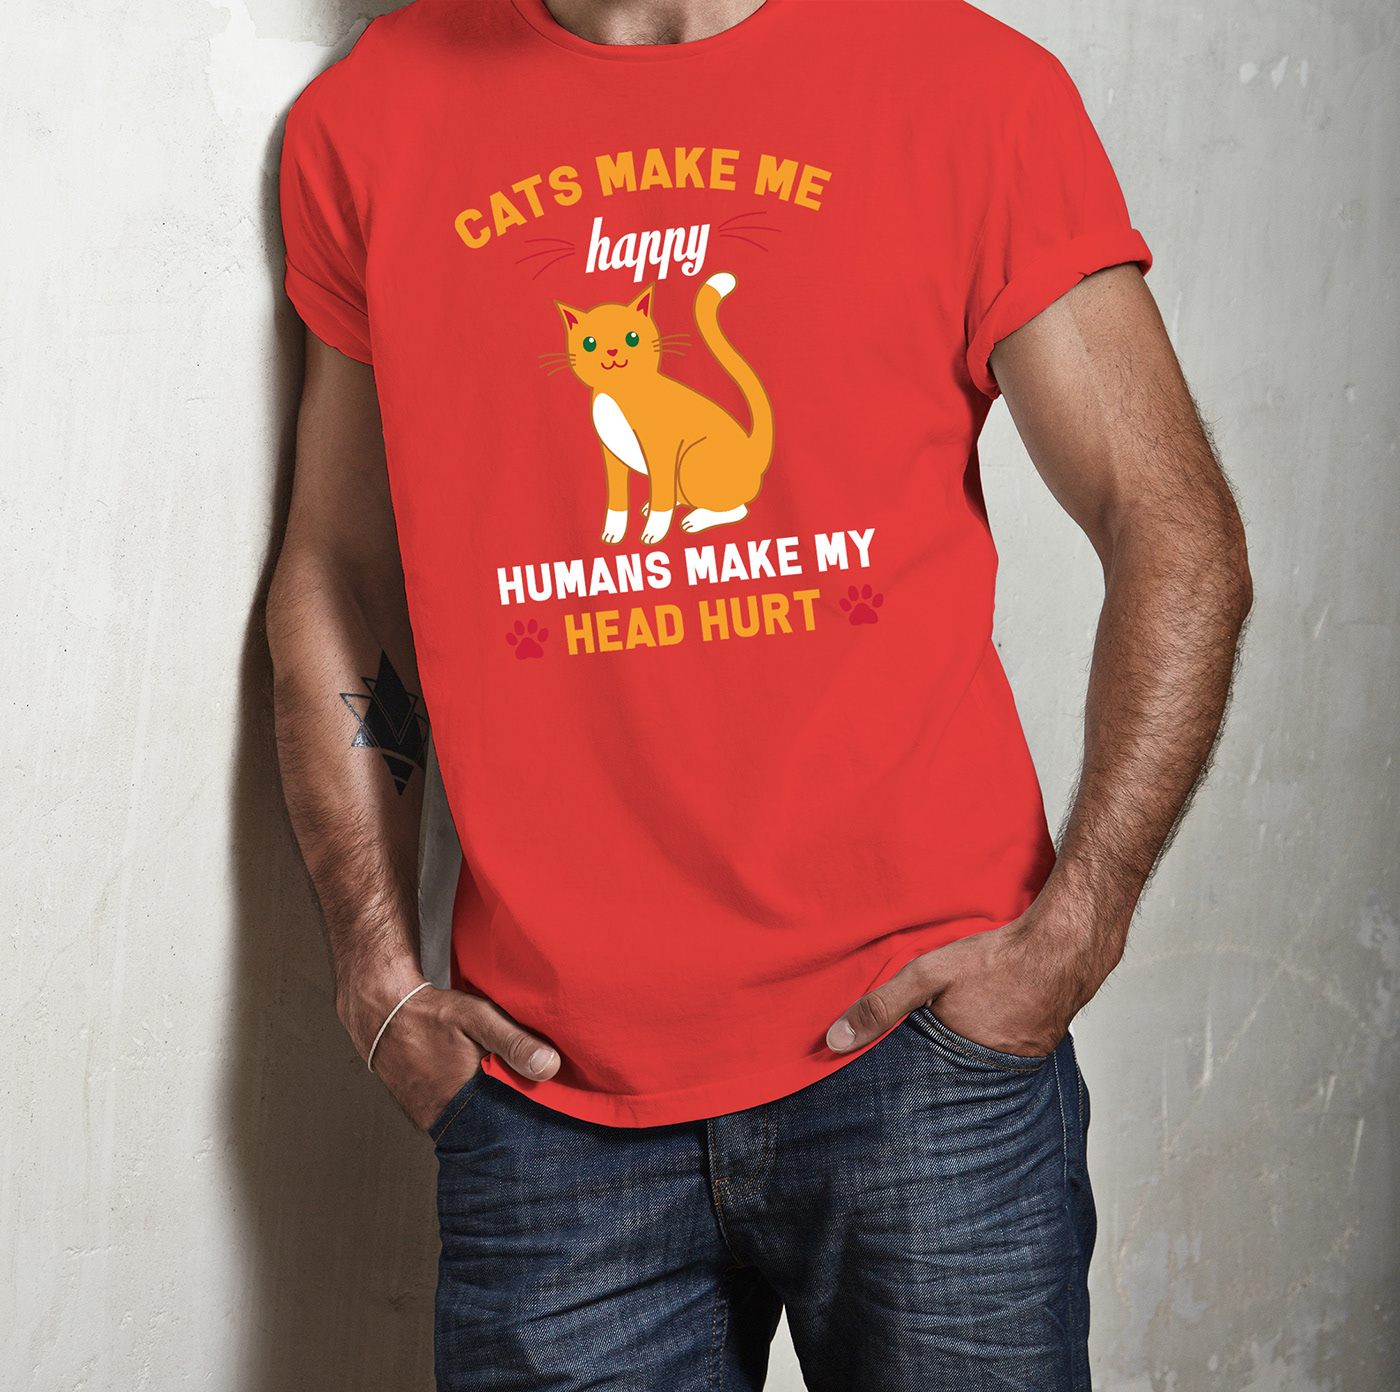 cat shirt Cat T Shirt Cat T-Shirt Amazon Cat Tshirt design cat vector custom t-shirt Funny cat Tshirt T-Shirt Design tshirt typography t shirt